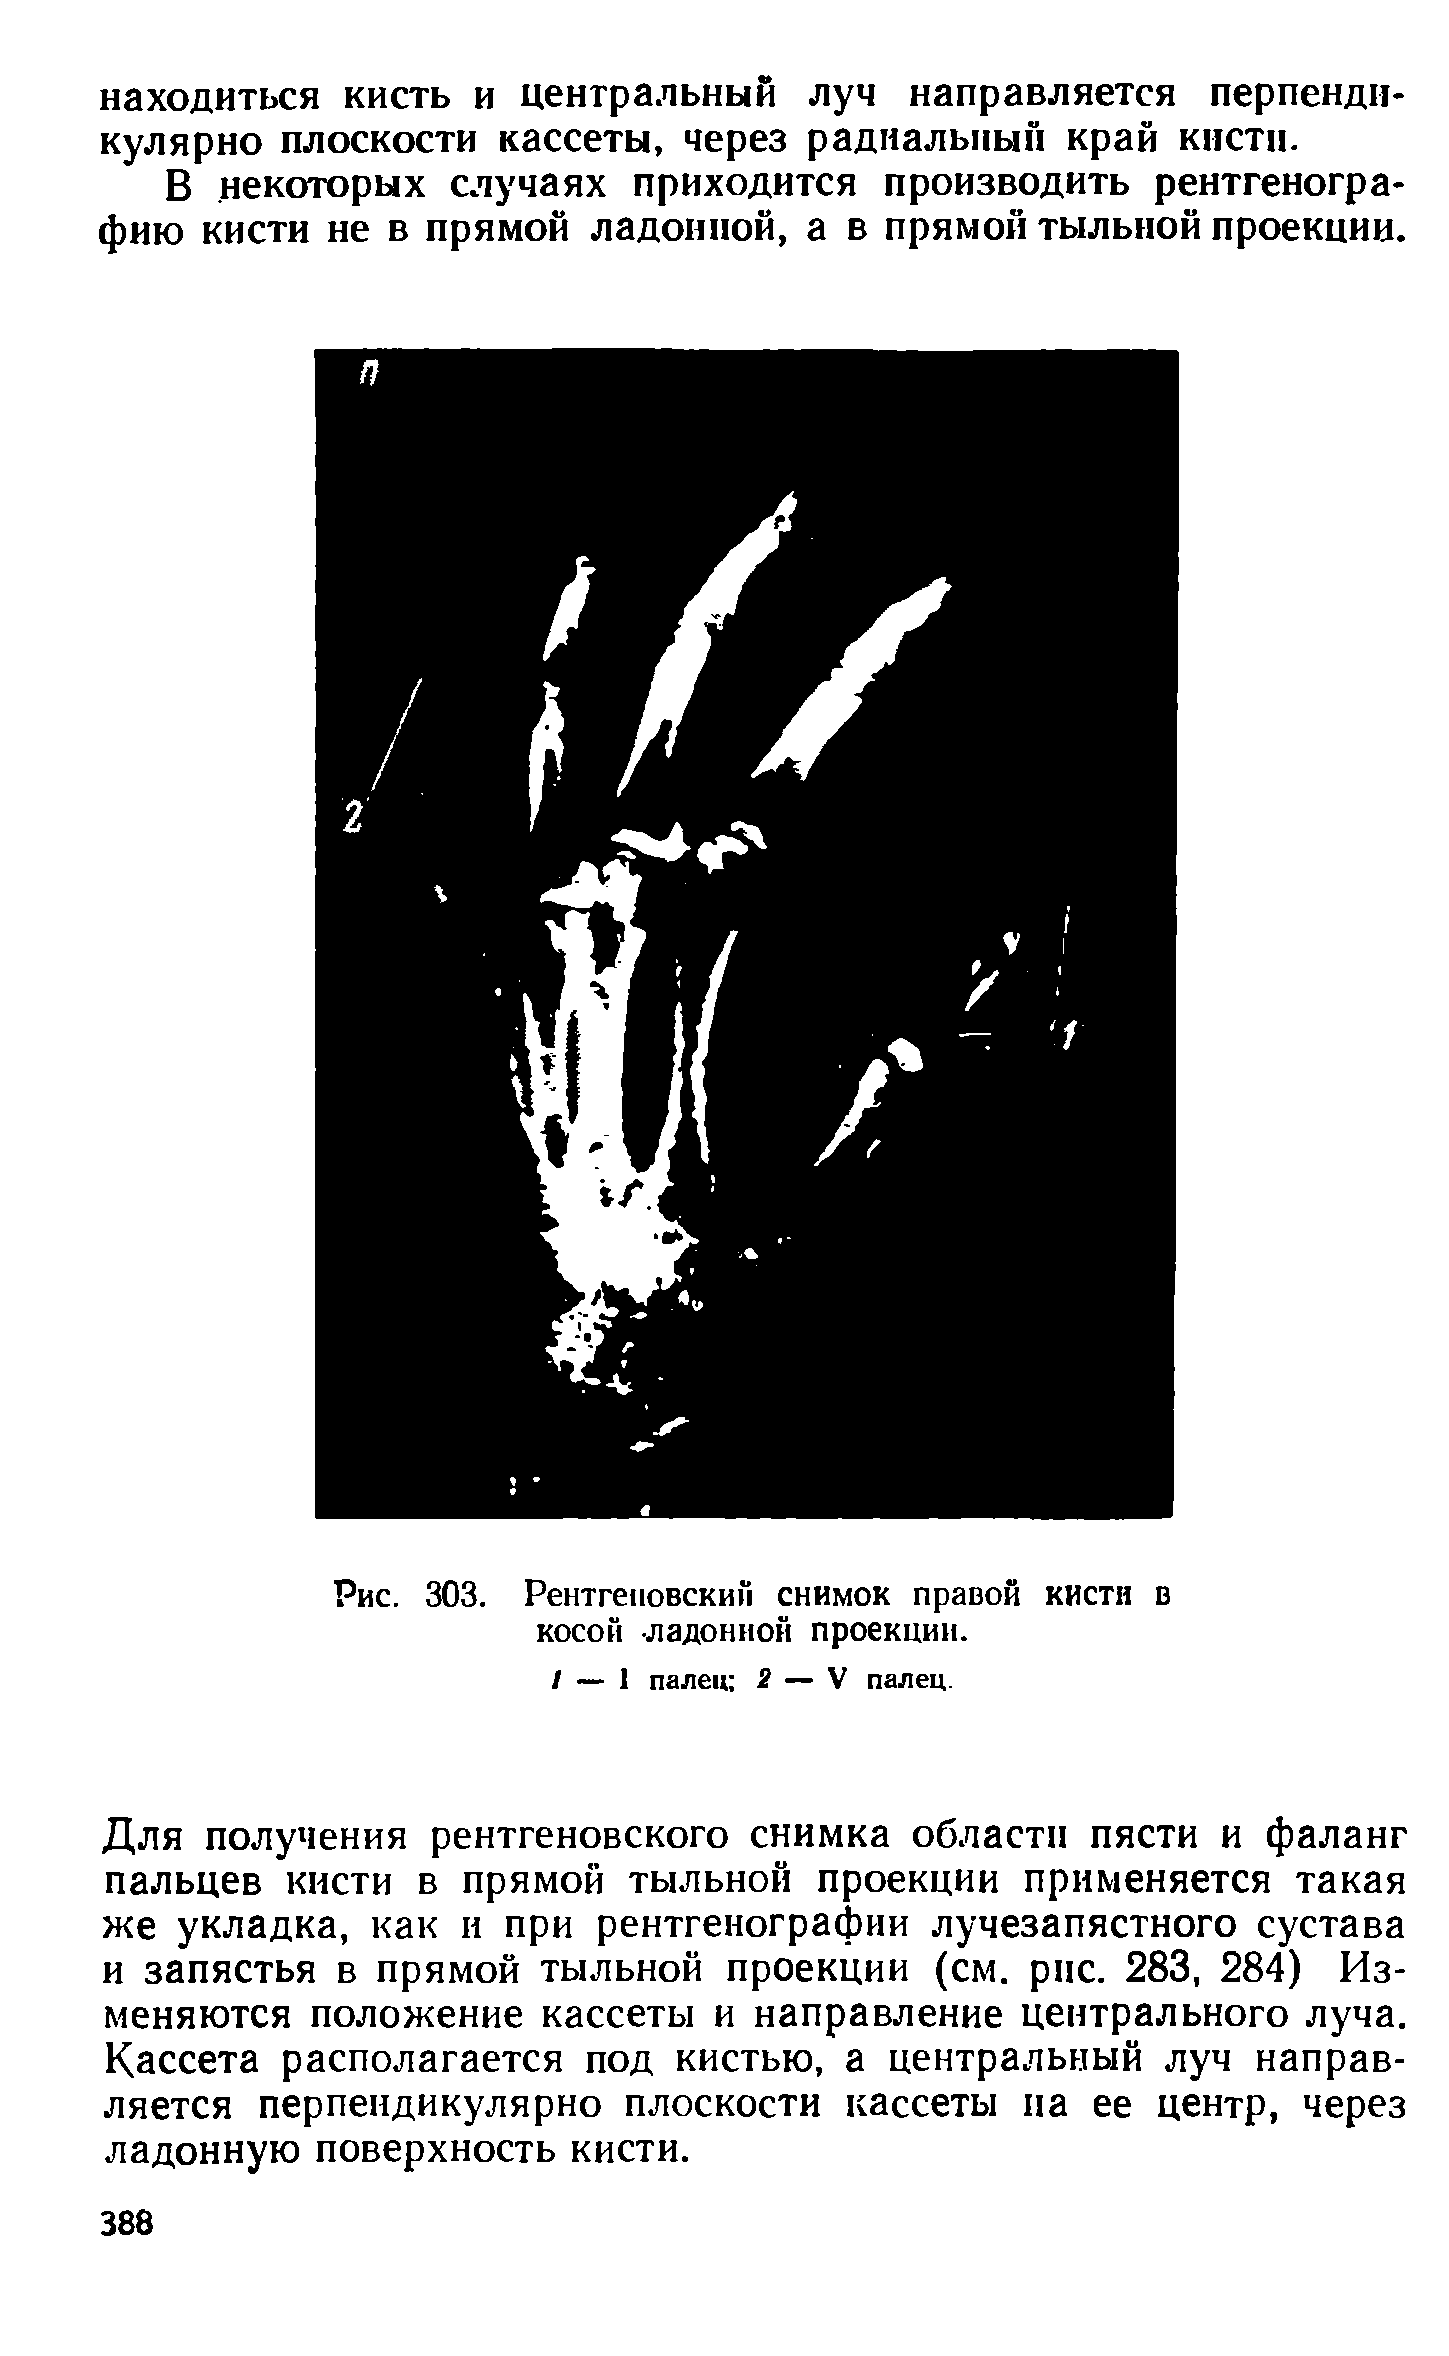 Рис. 303. Рентгеновским снимок правой кисти в косой ладонной проекции.